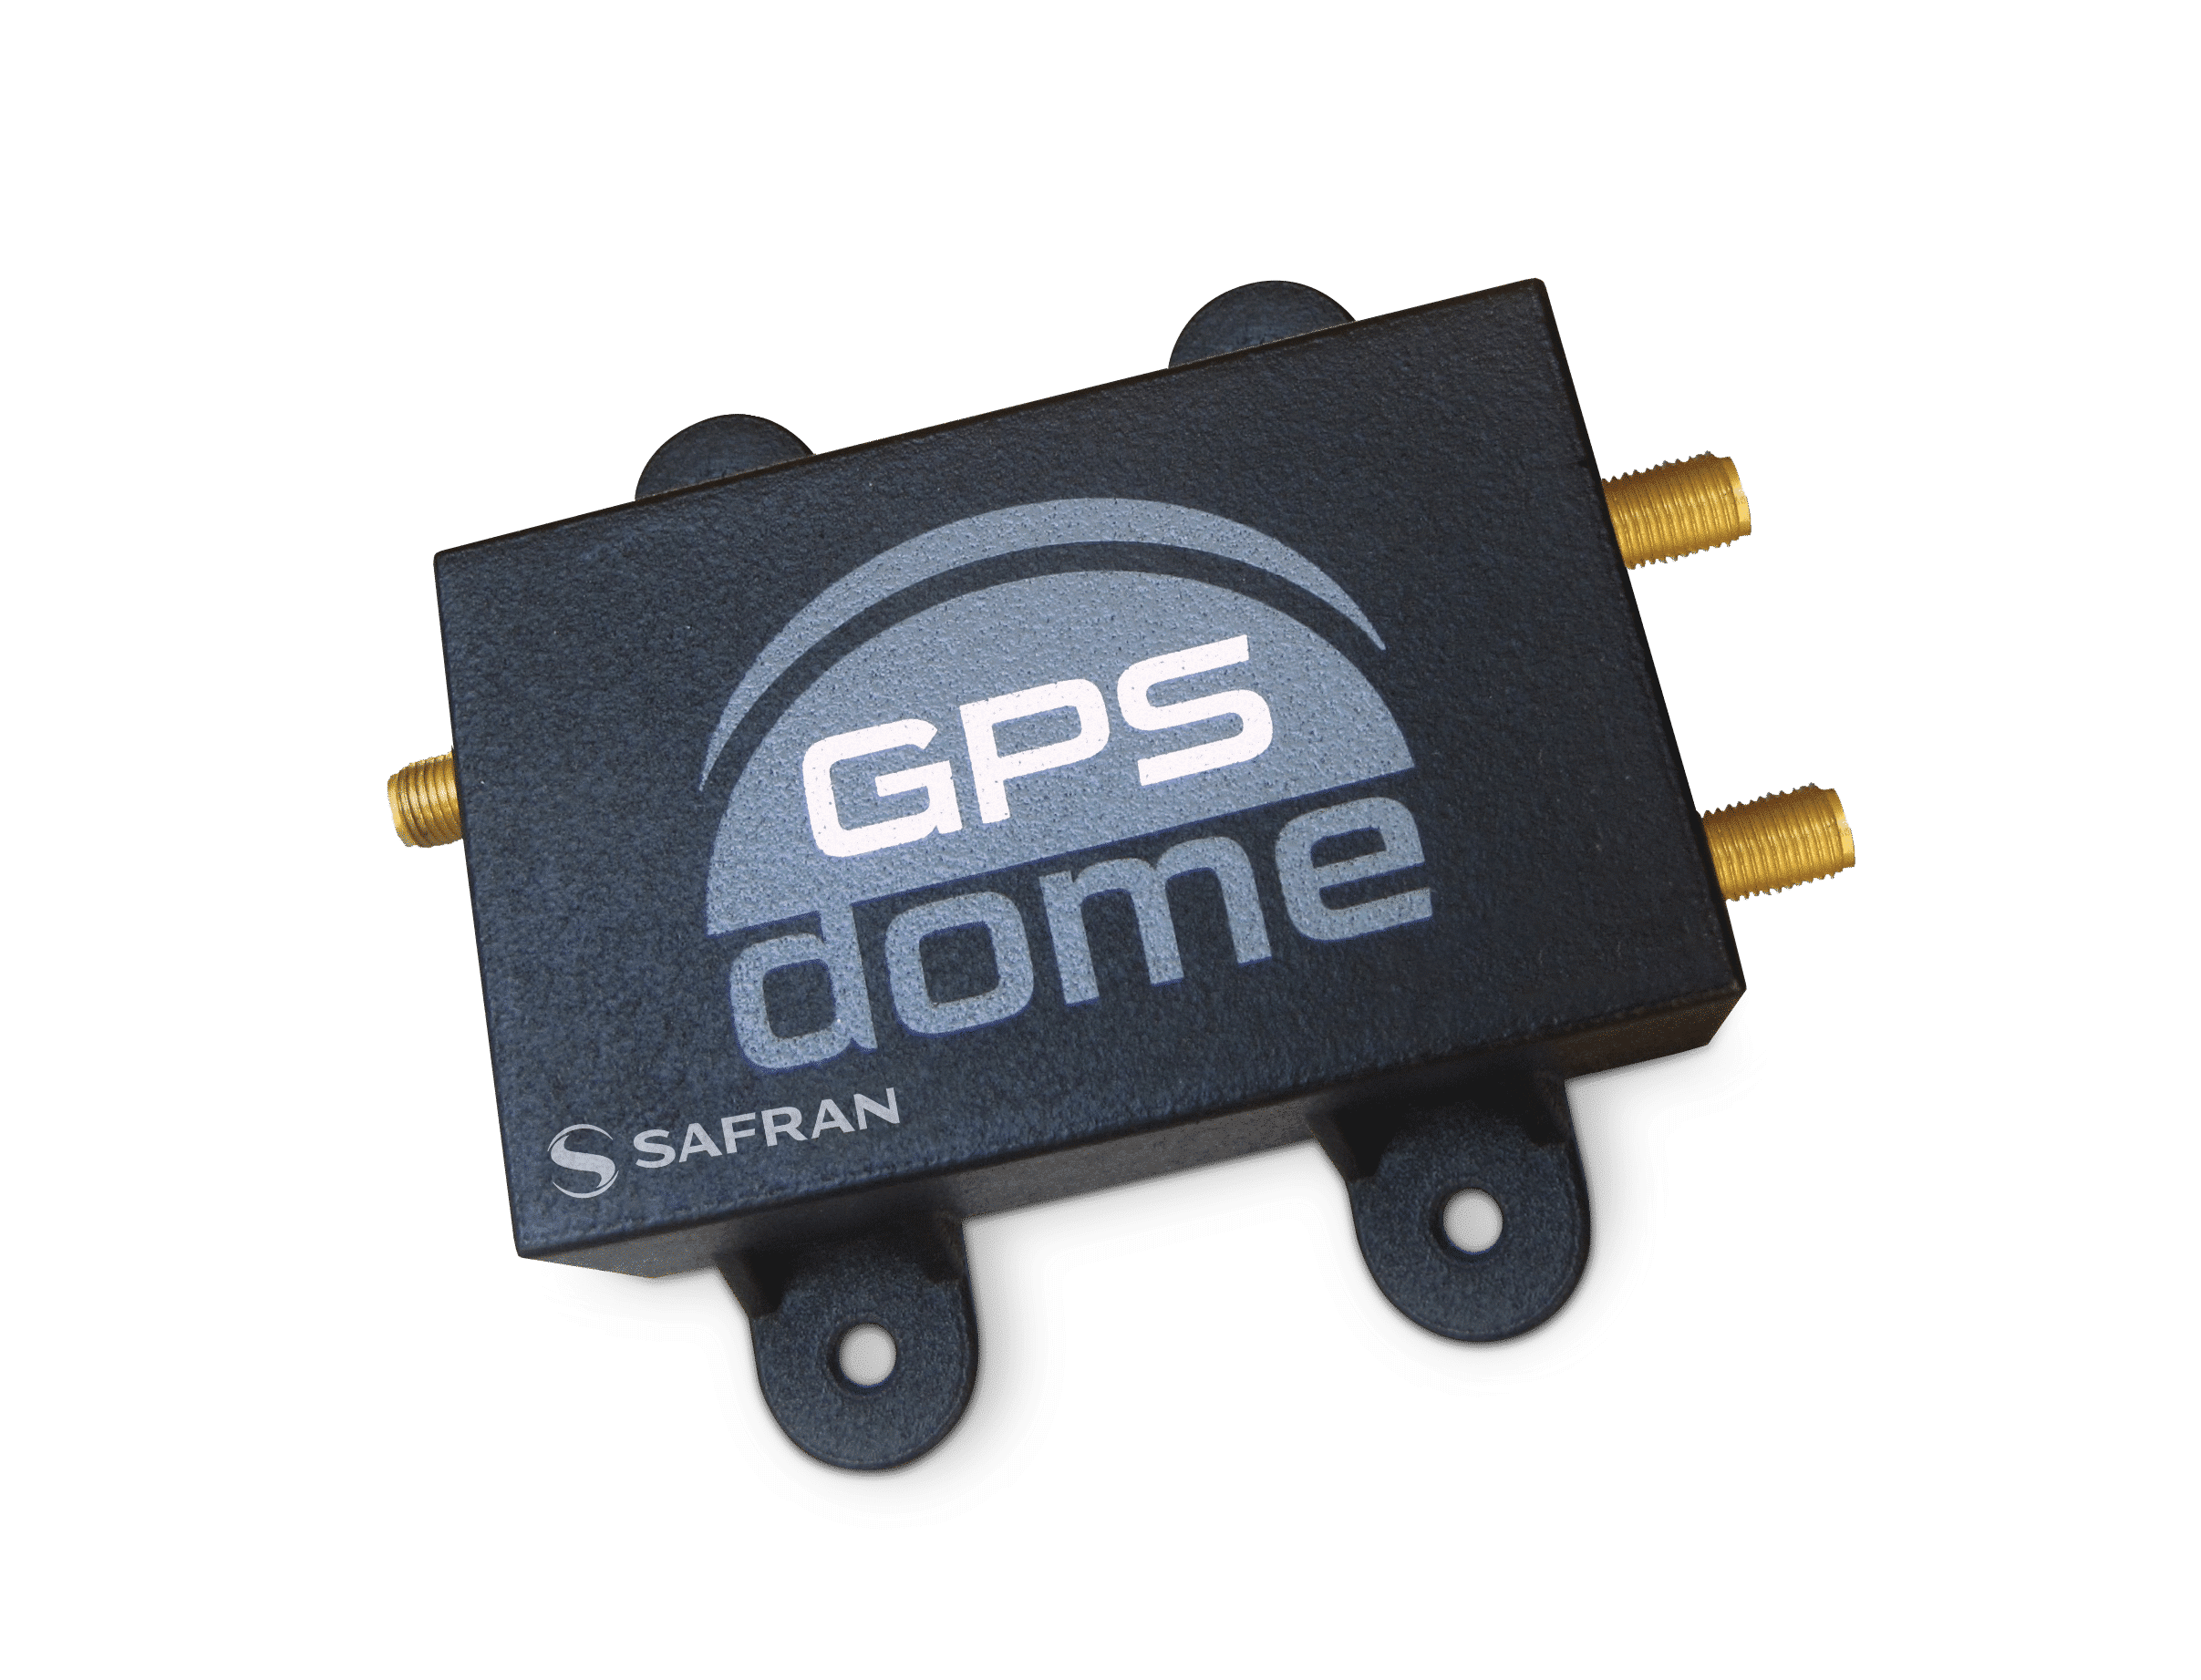 GPSdome Anti-Jamming Device